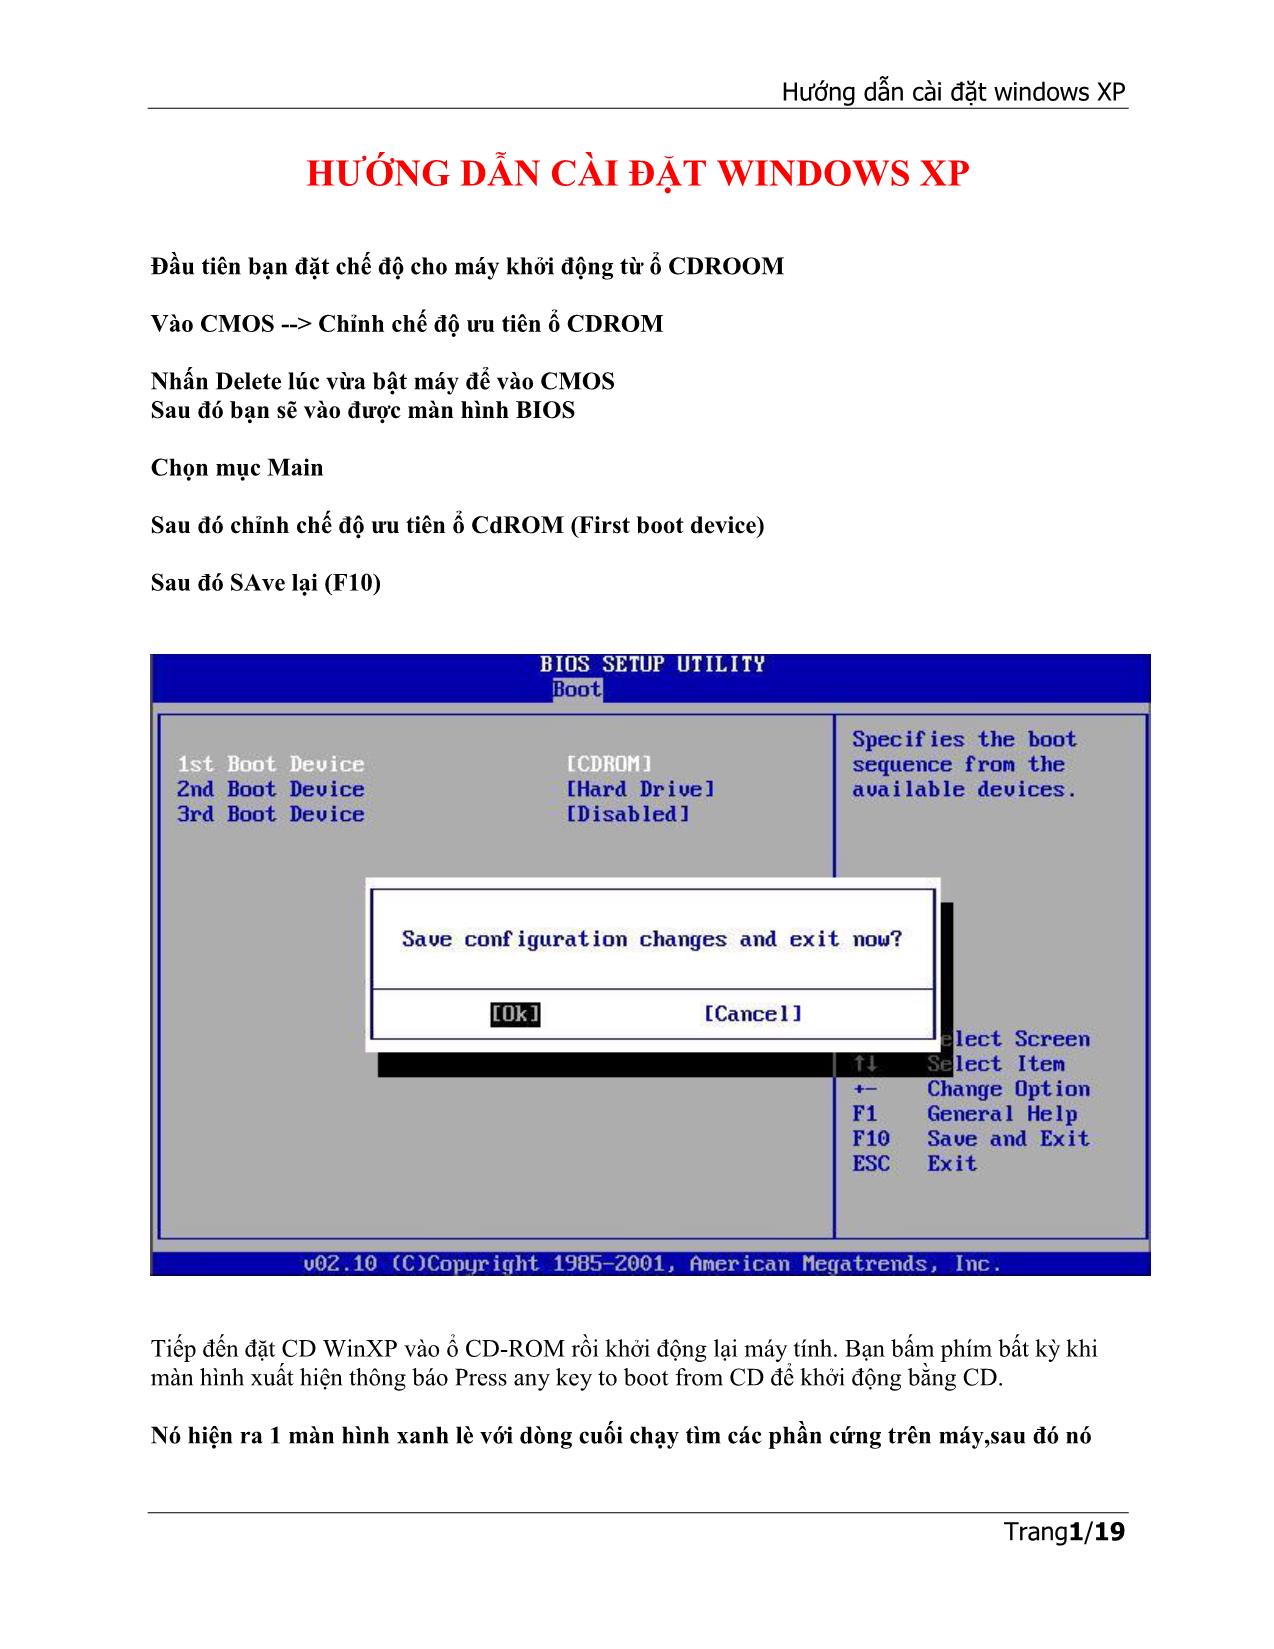 Hướng dẫn cài đặt windows XP trang 1